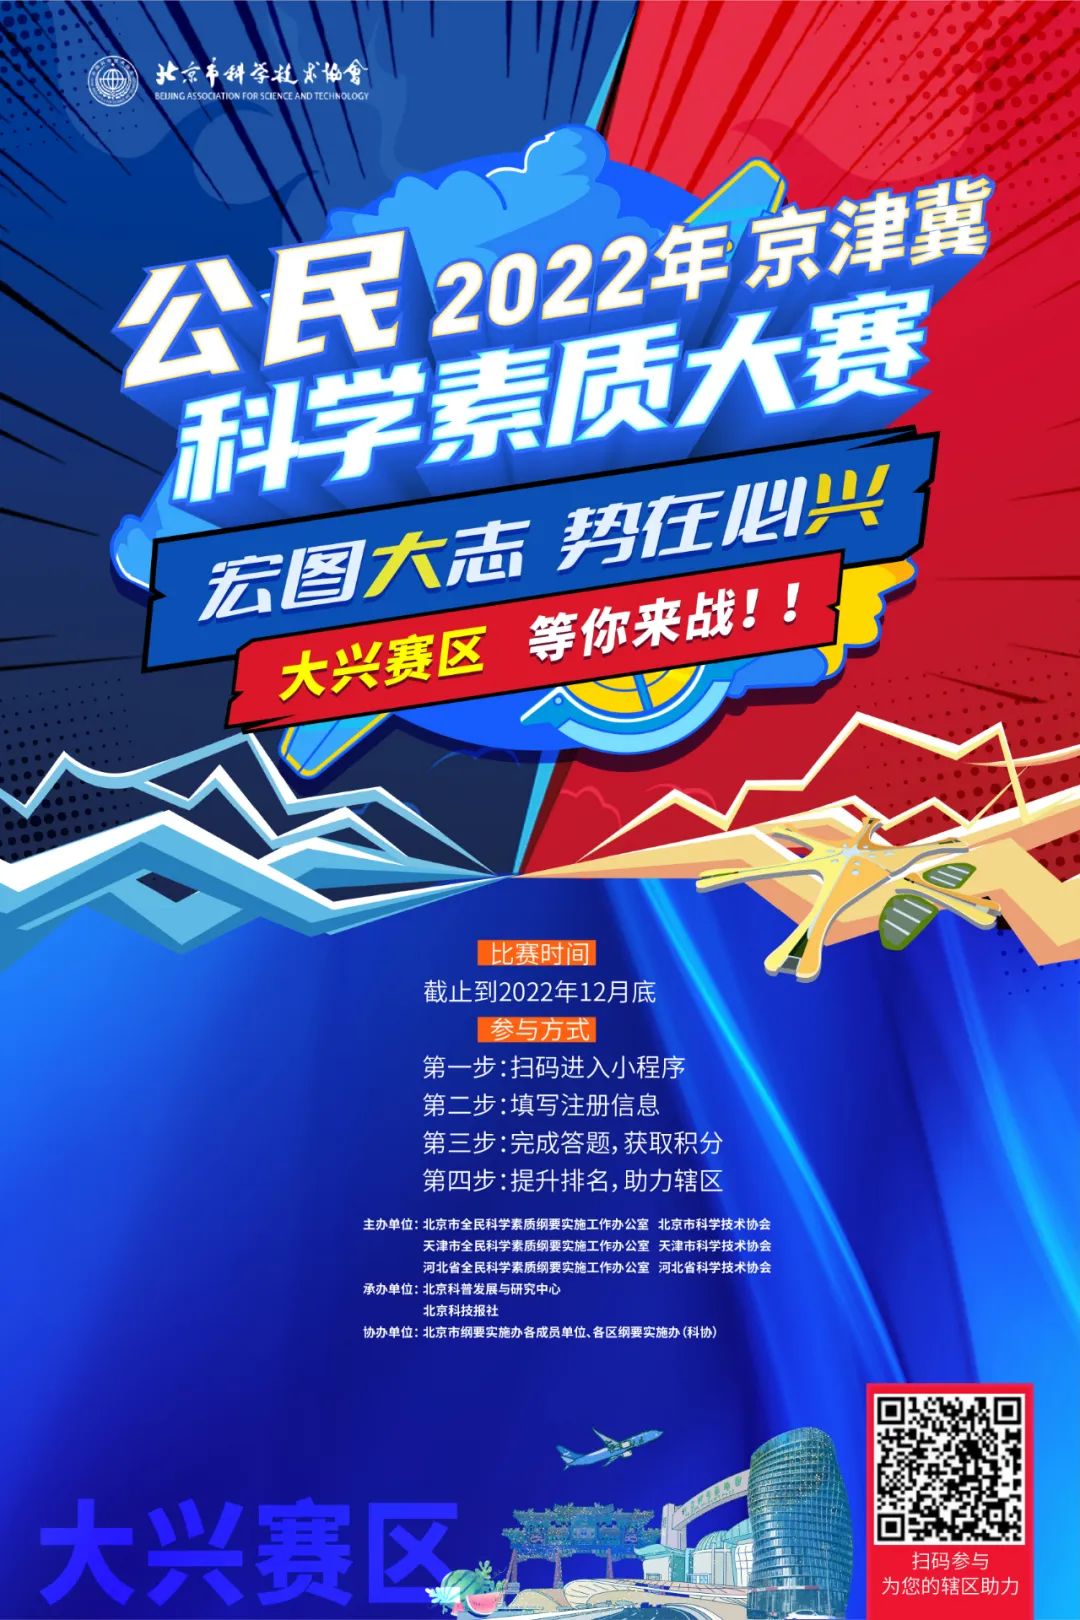 @所有人 2022年京津冀公民科学素质大赛复赛即将开赛